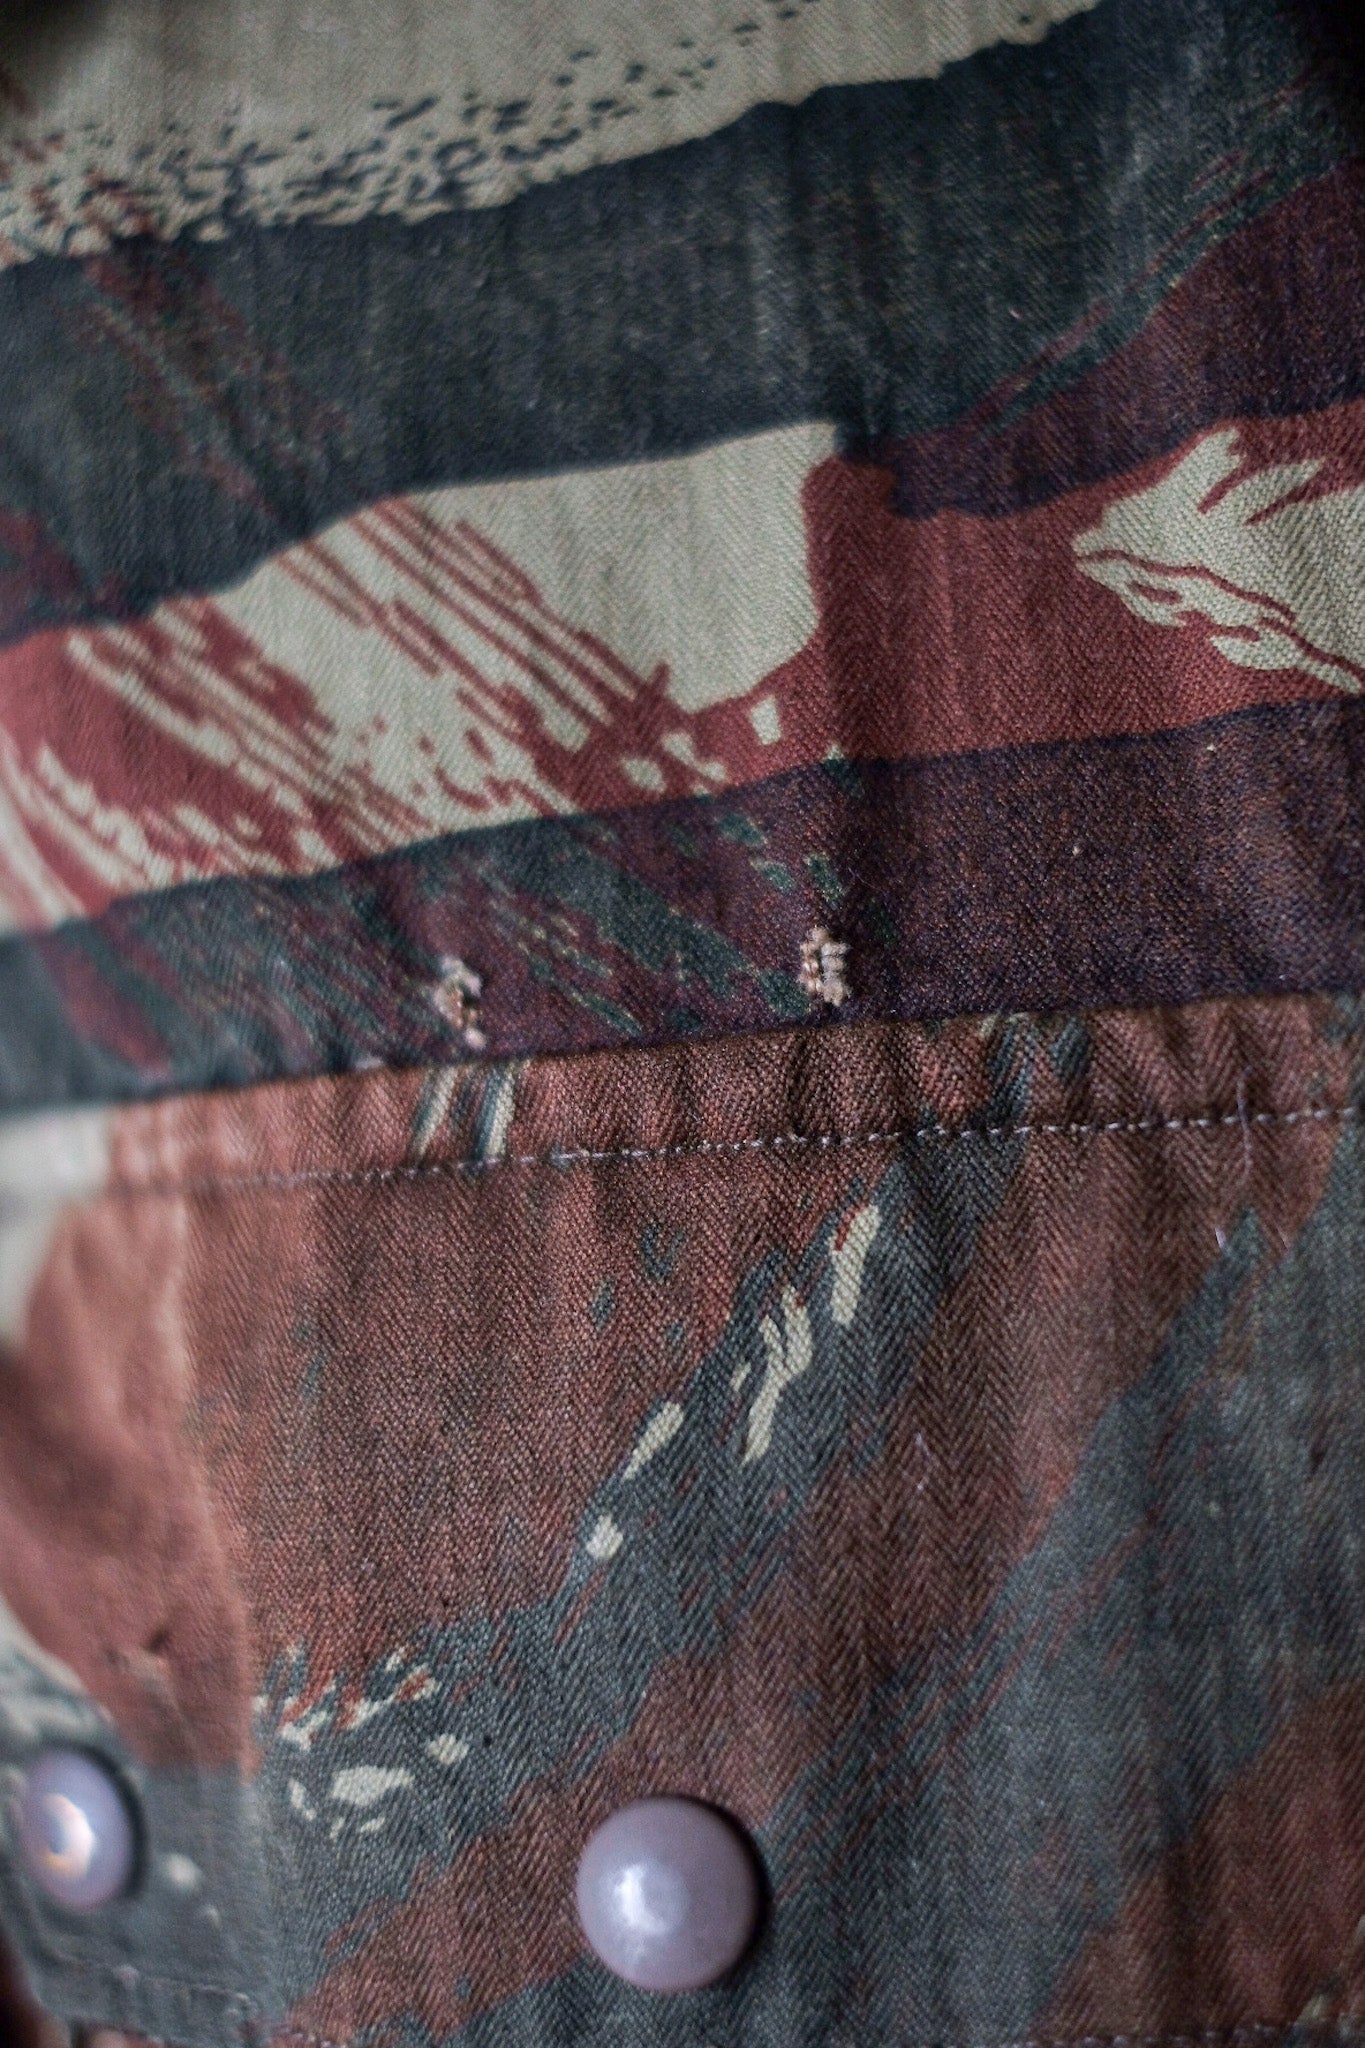 [~ 60 년대] 프랑스 군대 도마뱀 카모 낙하산 재킷